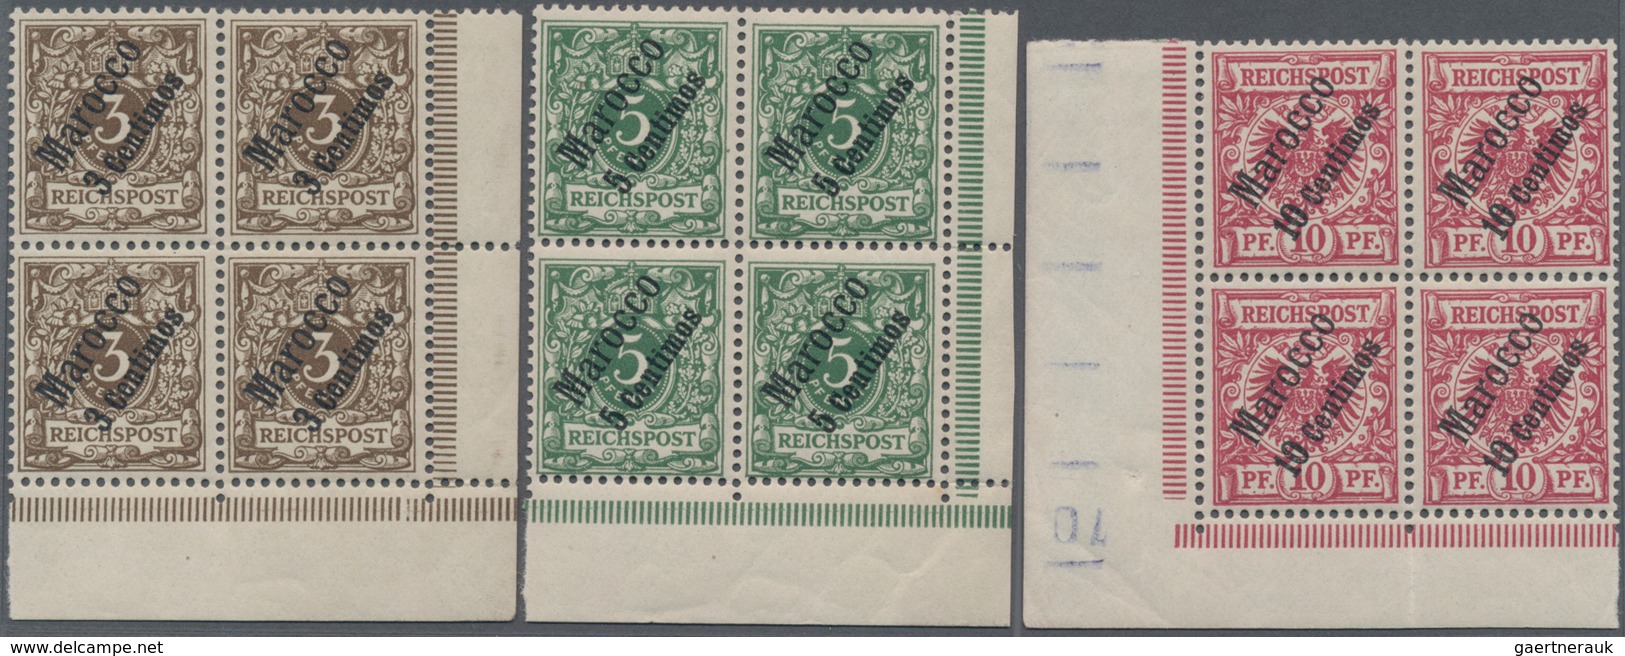 Deutsche Post In Marokko: 1899, Freimarken Krone Adler Mit Diagonalem Aufdruck "Marocco" Und Neuem W - Marocco (uffici)